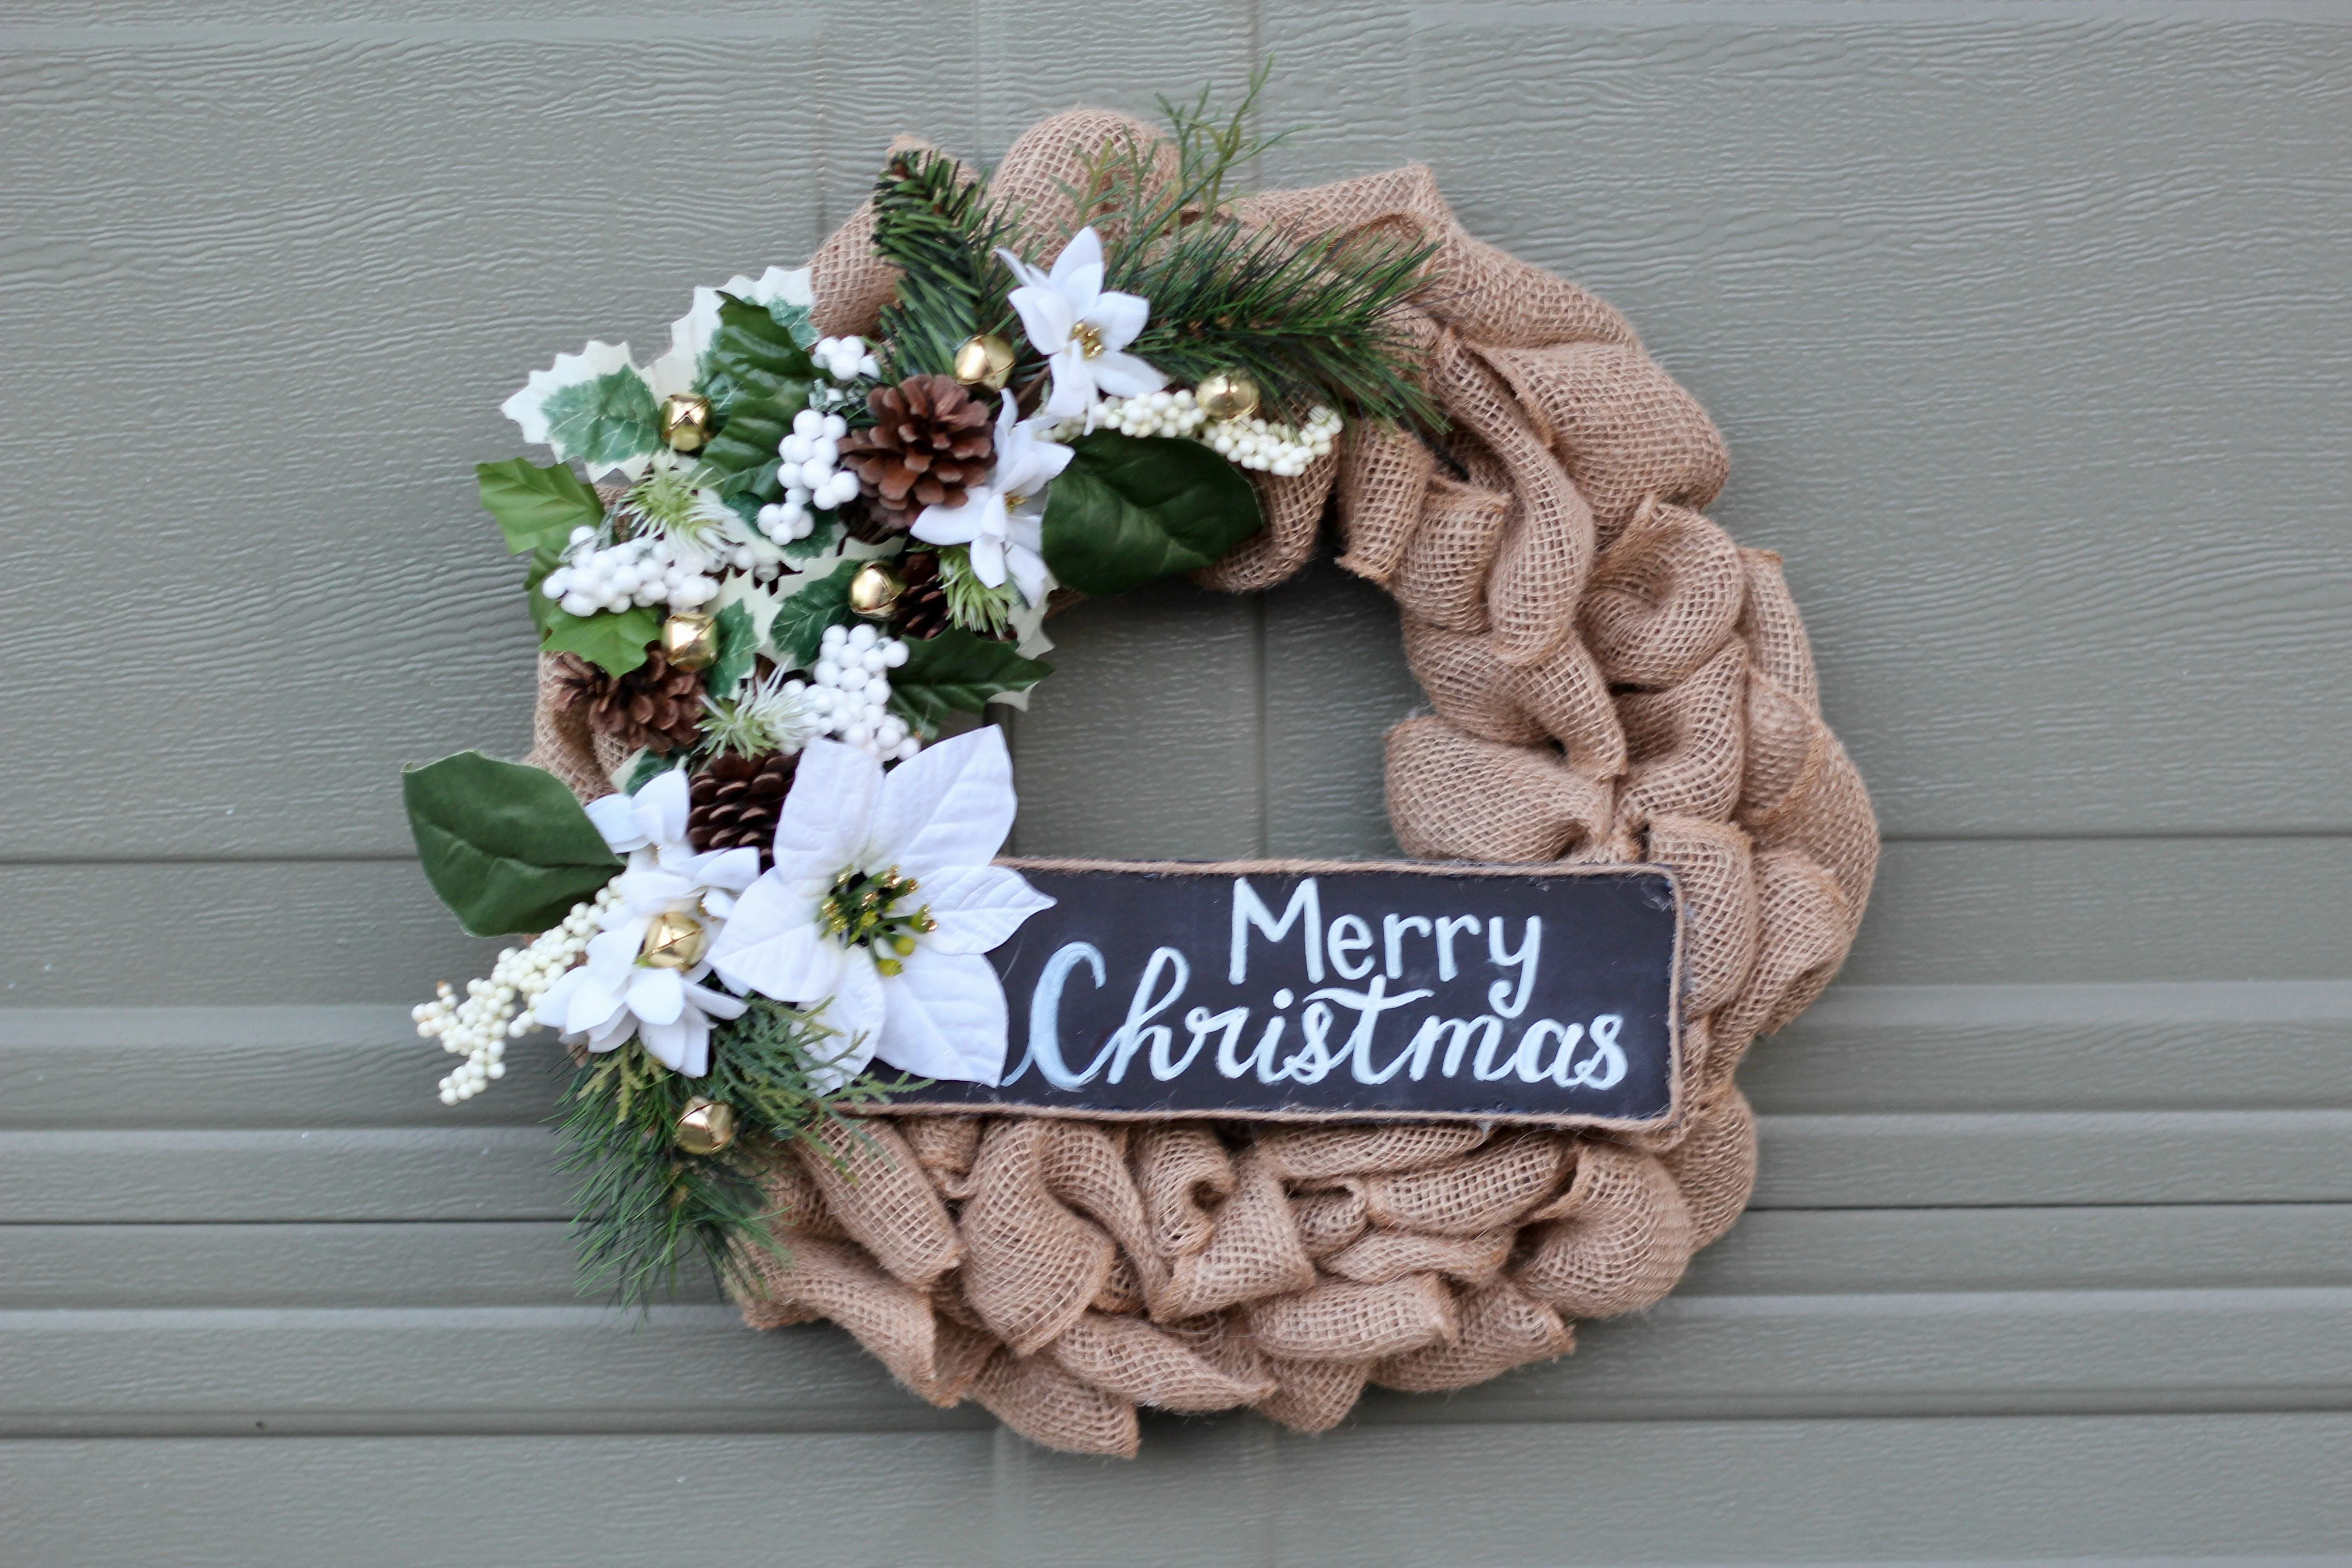 DIY wreath burlap farmhouse style